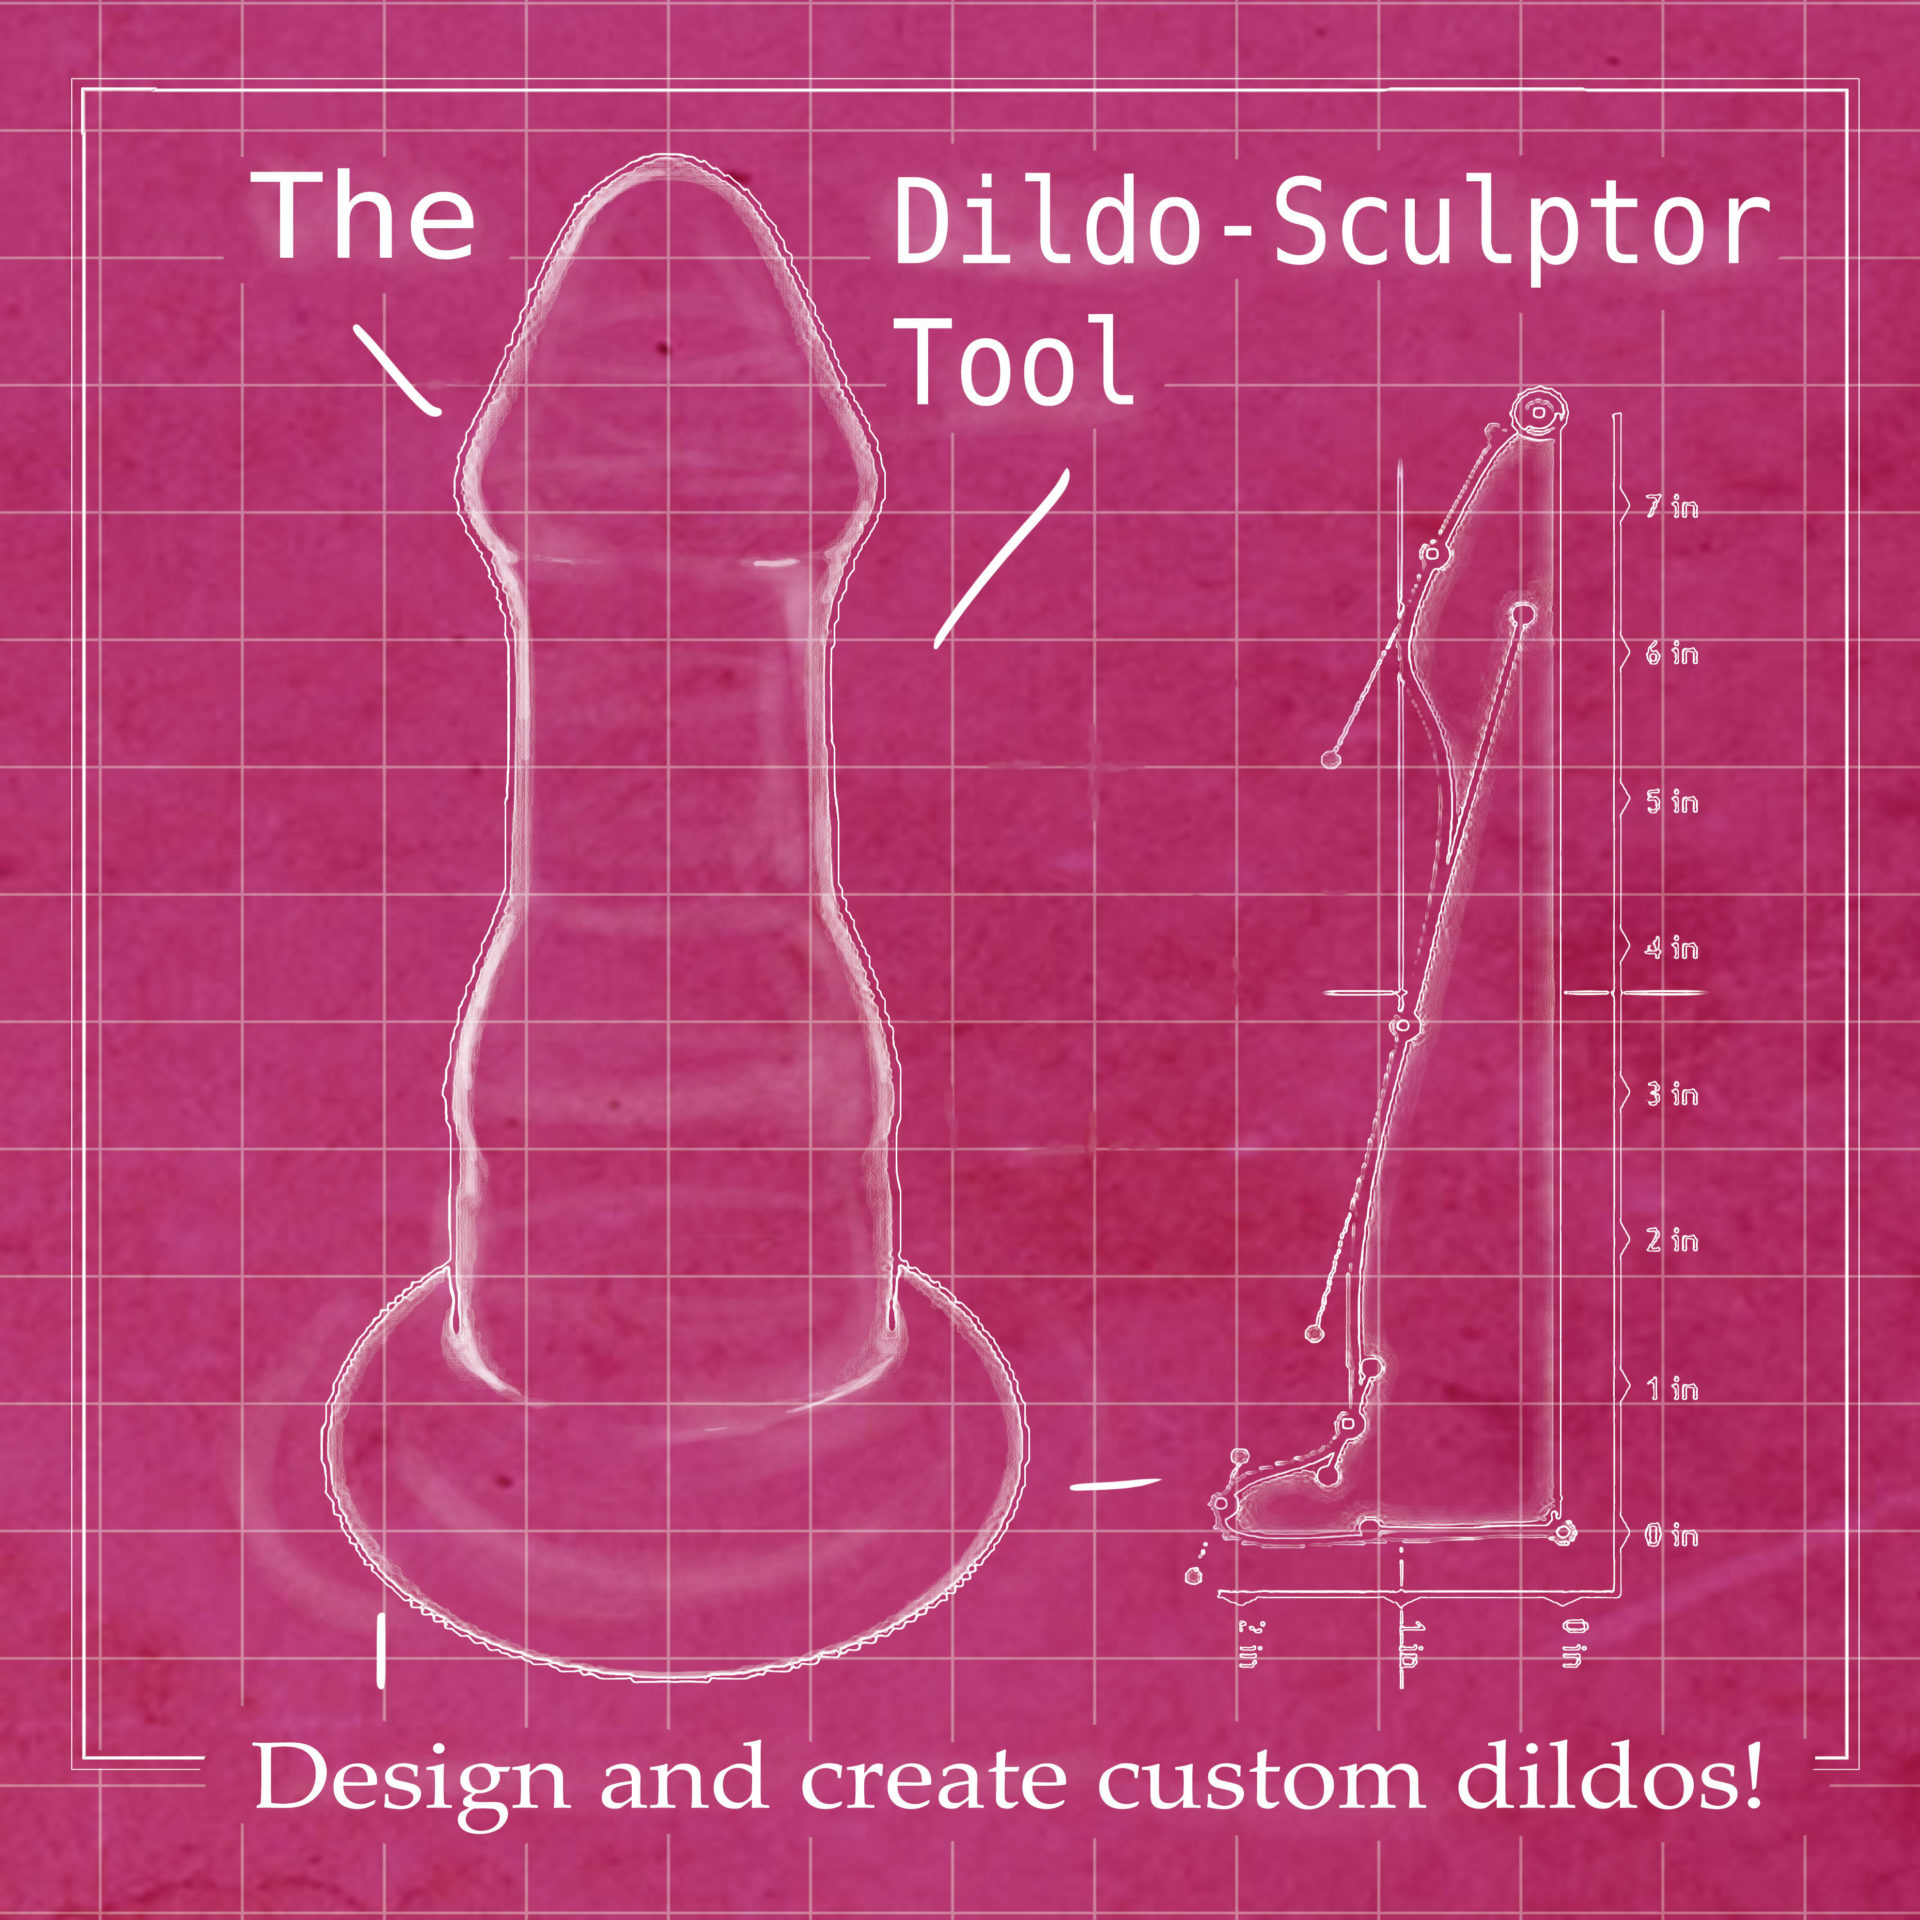 The Dildo-Sculptor Tool: Make Your Own Dildos.